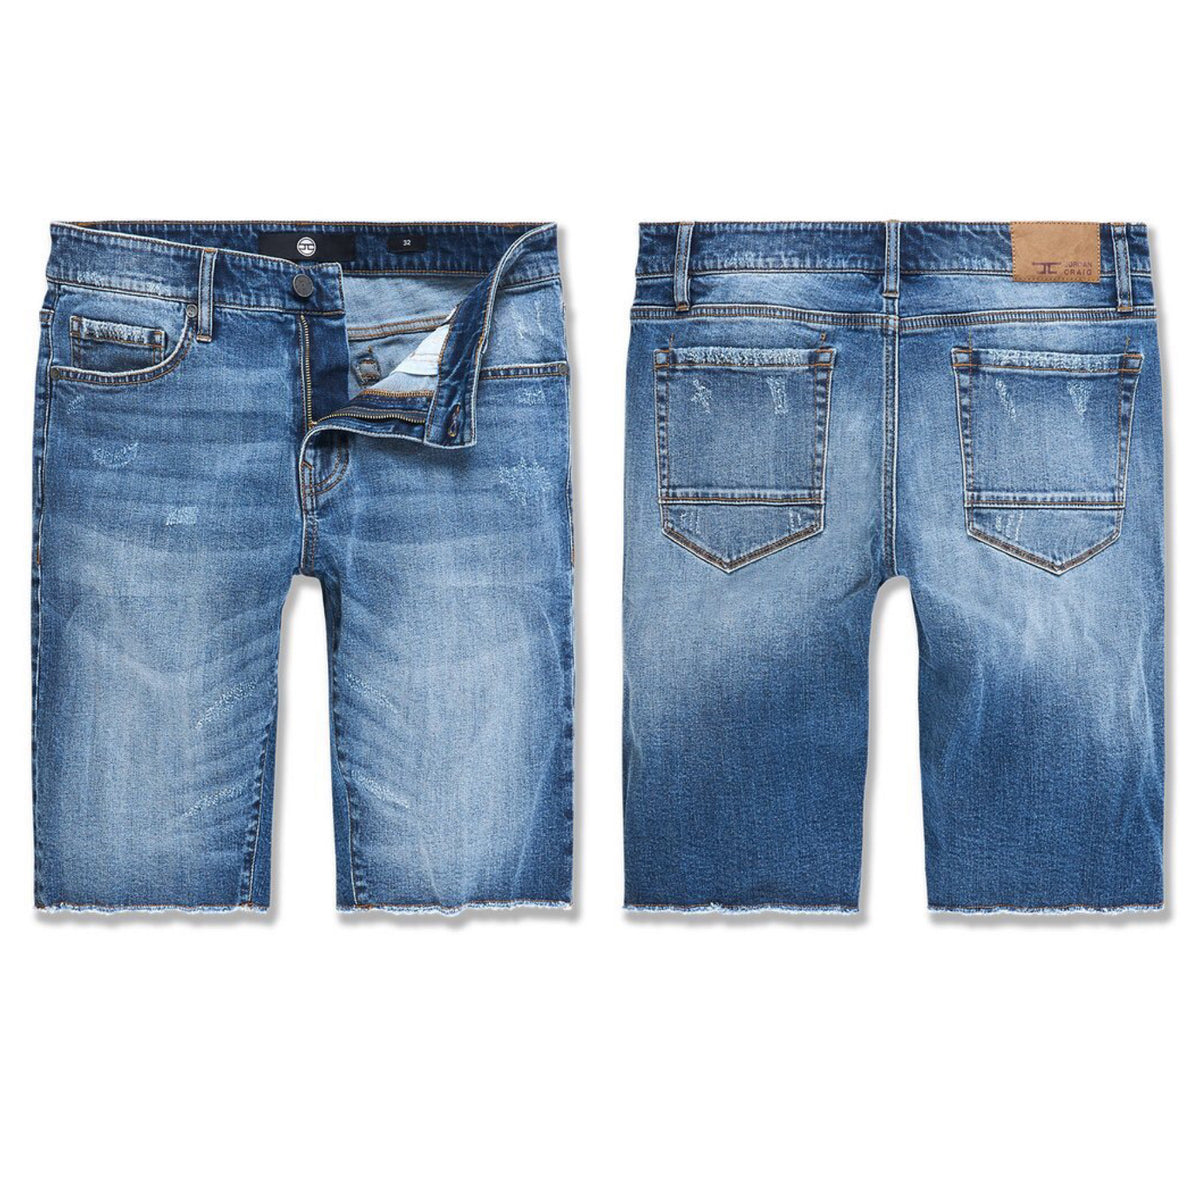 Jordan Craig - Edison Denim Shorts - Medium Blue - J3171S